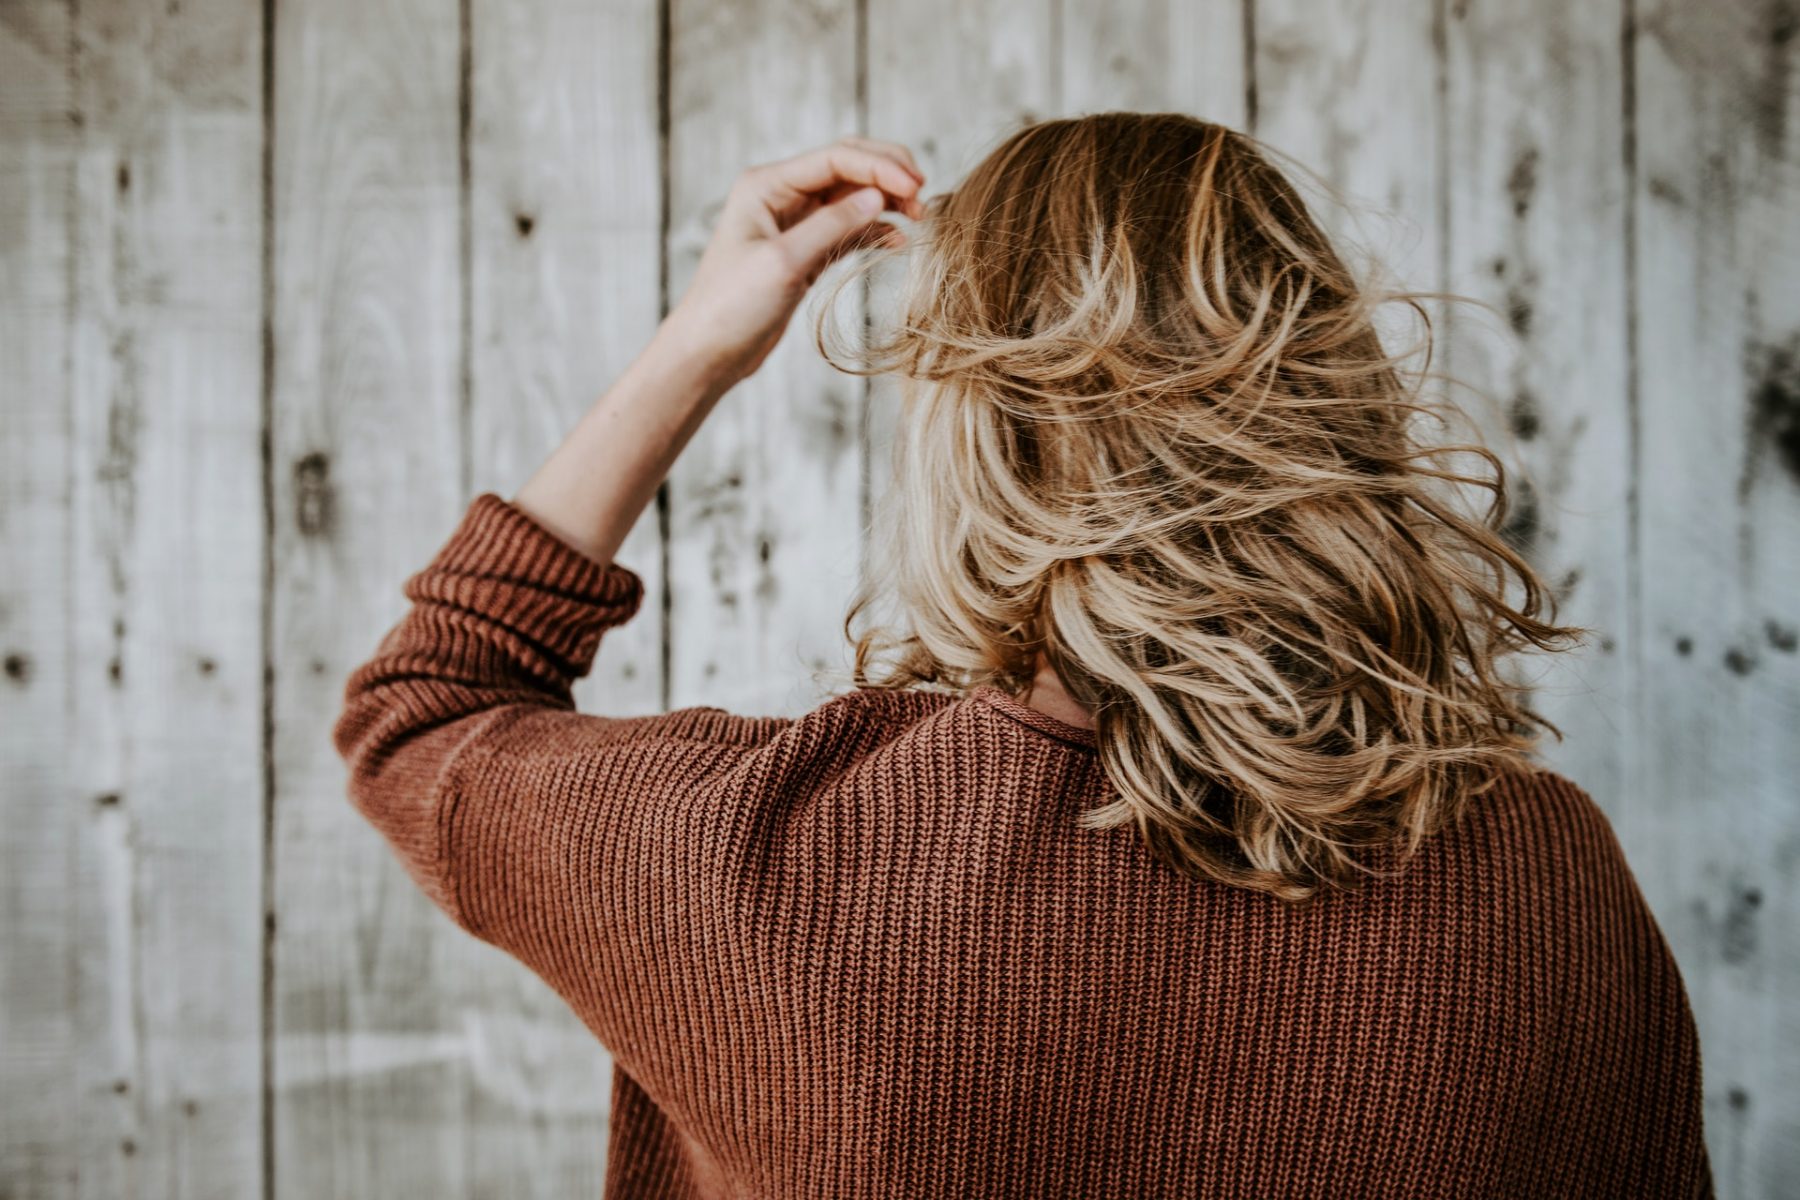 Ανοσοποιητικό σύστημα: Μια εκπληκτική σύνδεση με την ανάπτυξη των μαλλιών